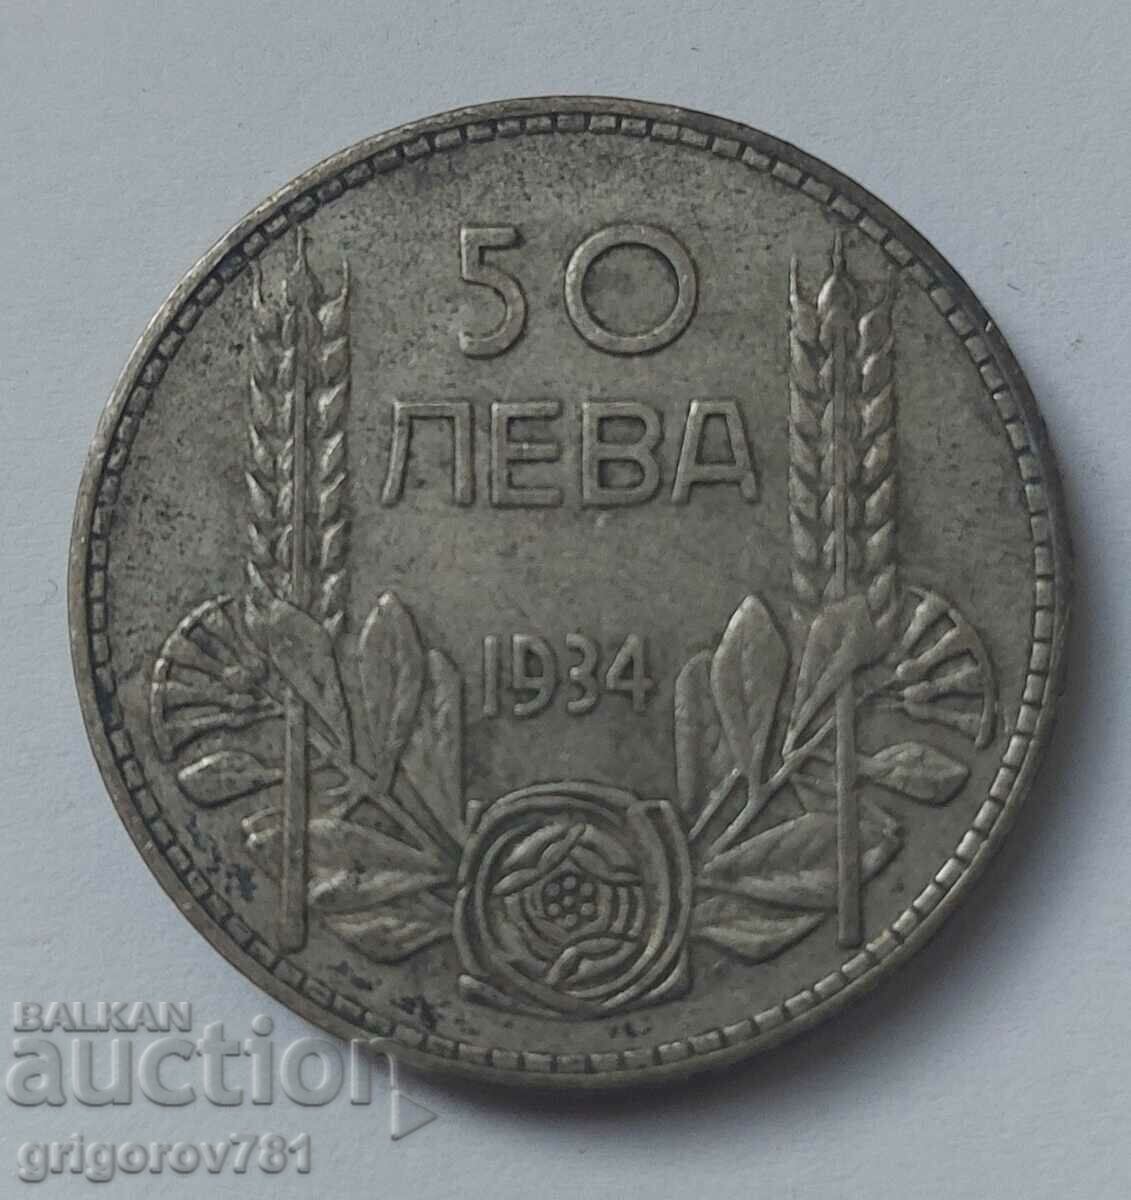 Ασήμι 50 λέβα Βουλγαρία 1934 - ασημένιο νόμισμα #21